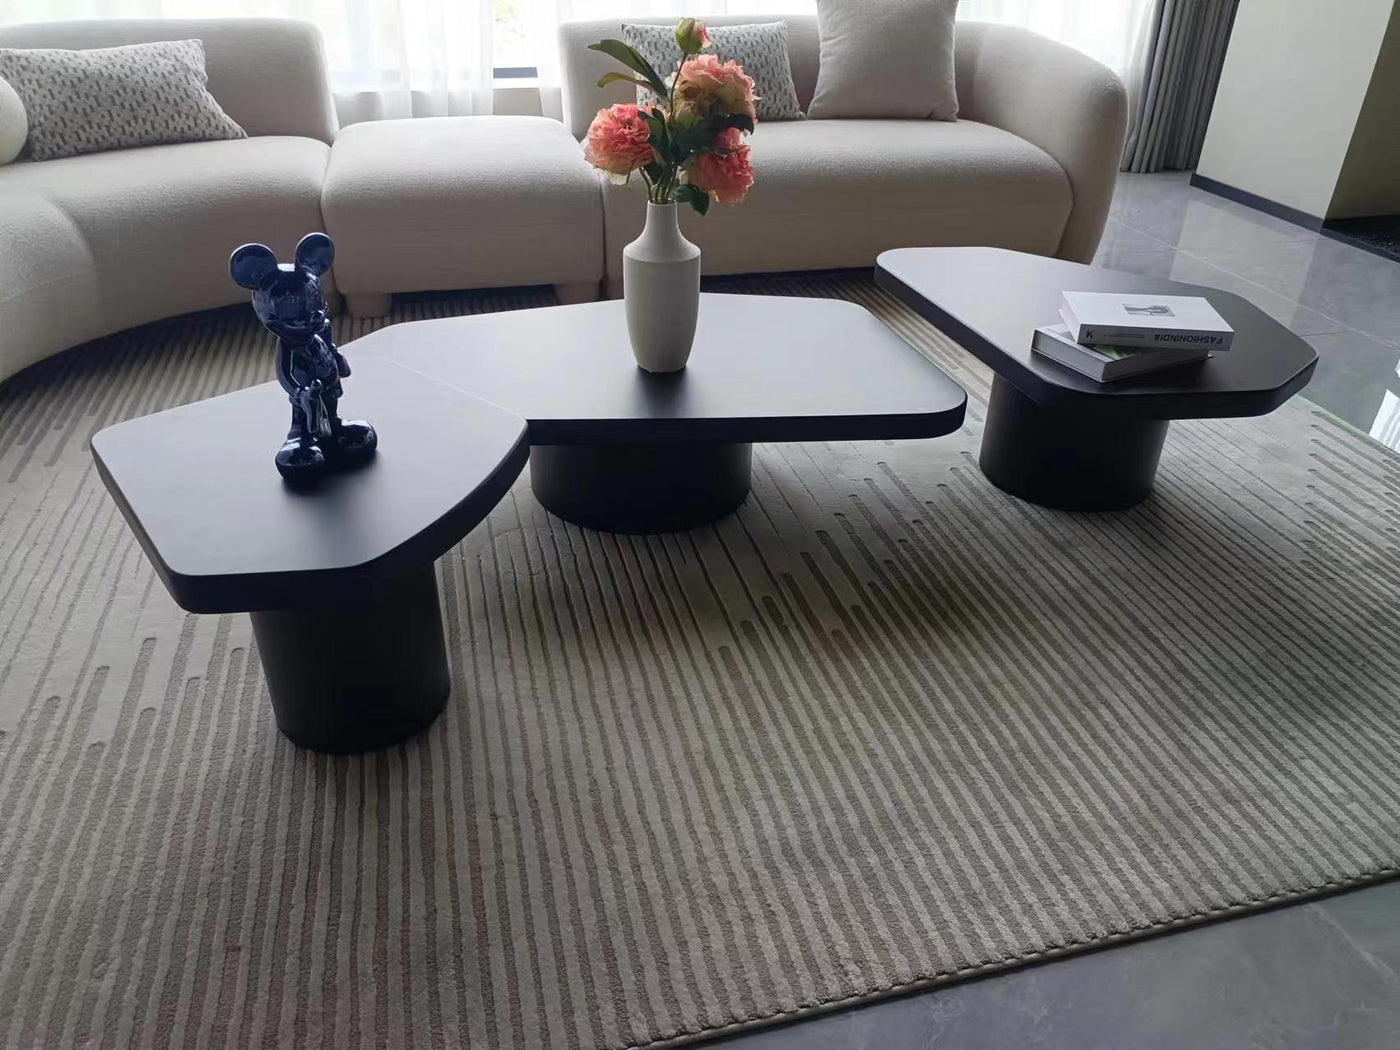 Liguria Side Table - Future Classics Furniture